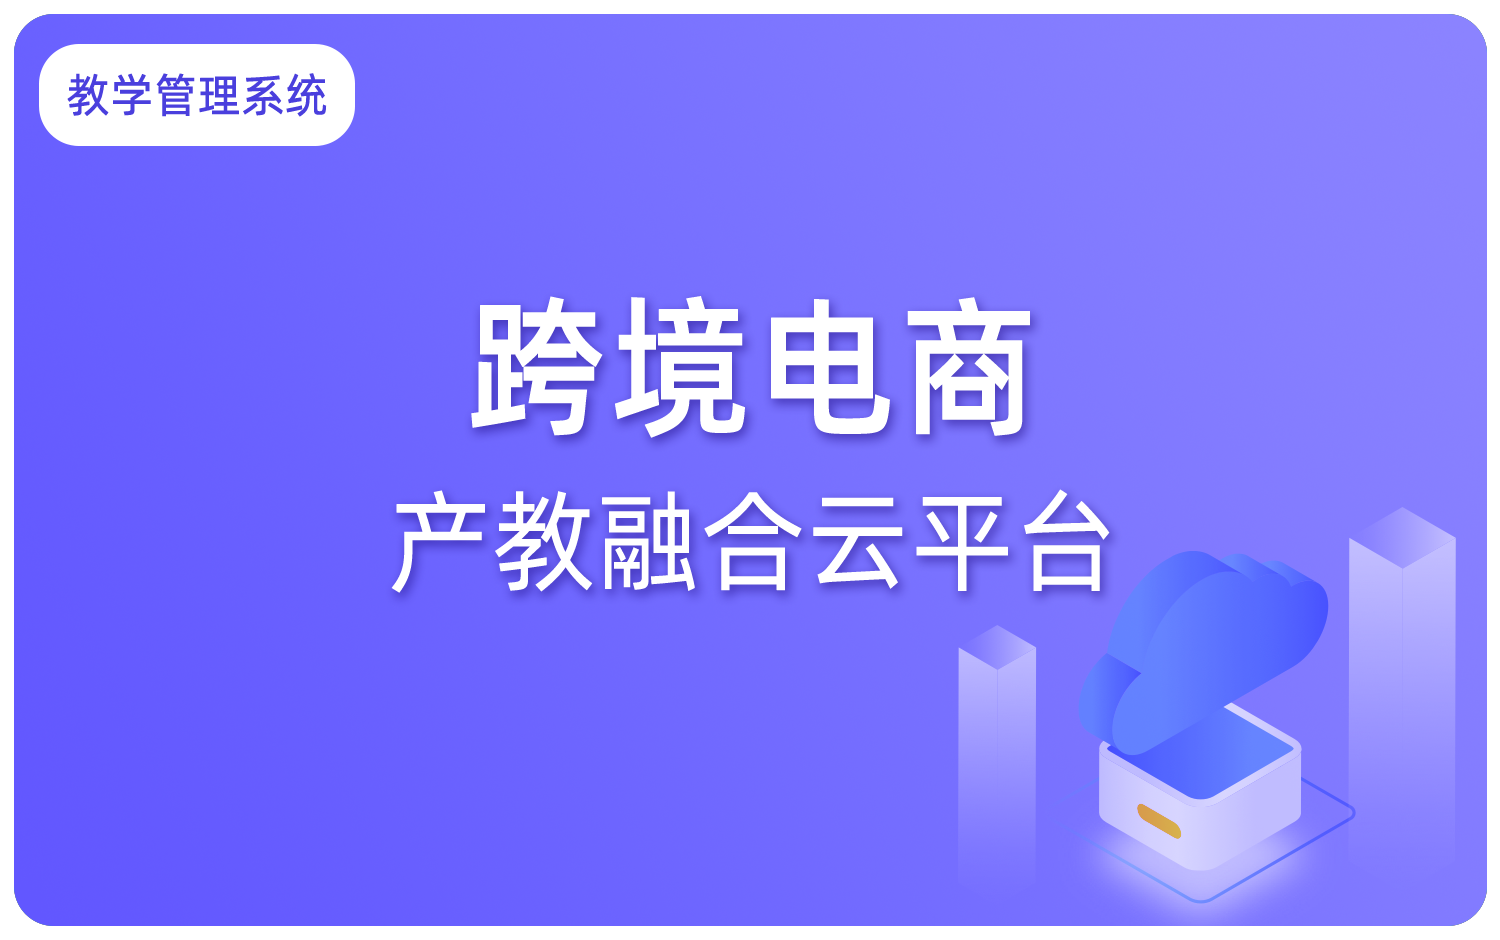 跨境電(diàn)商(shāng)产教融合云平台